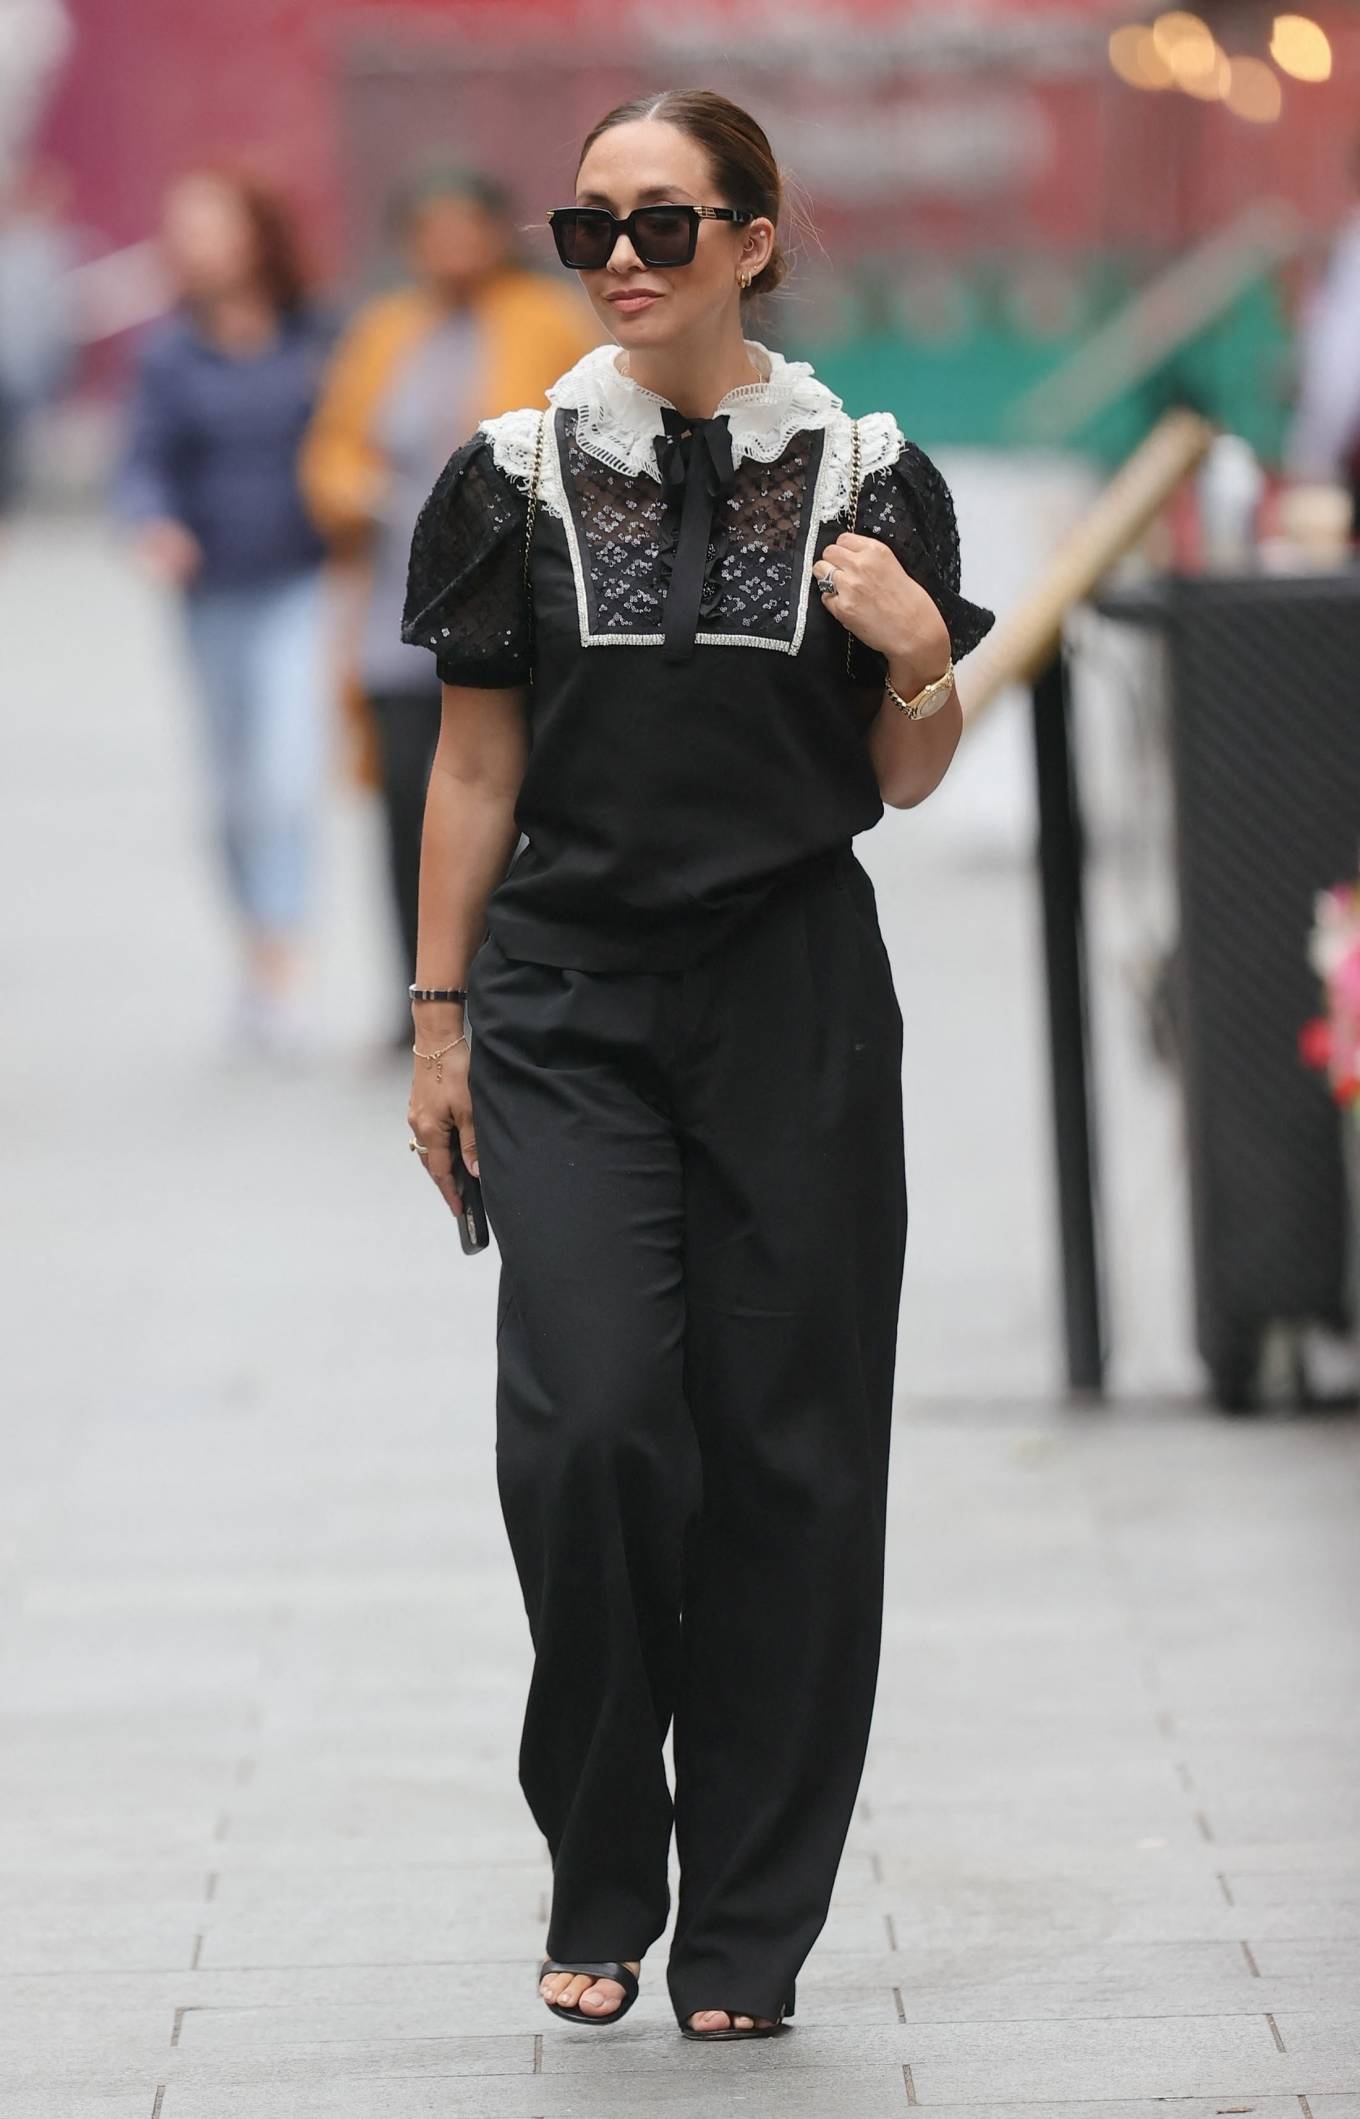 Myleene Klass 2021 : Myleene Klass – Out in a monochrome top and black pants in London-04